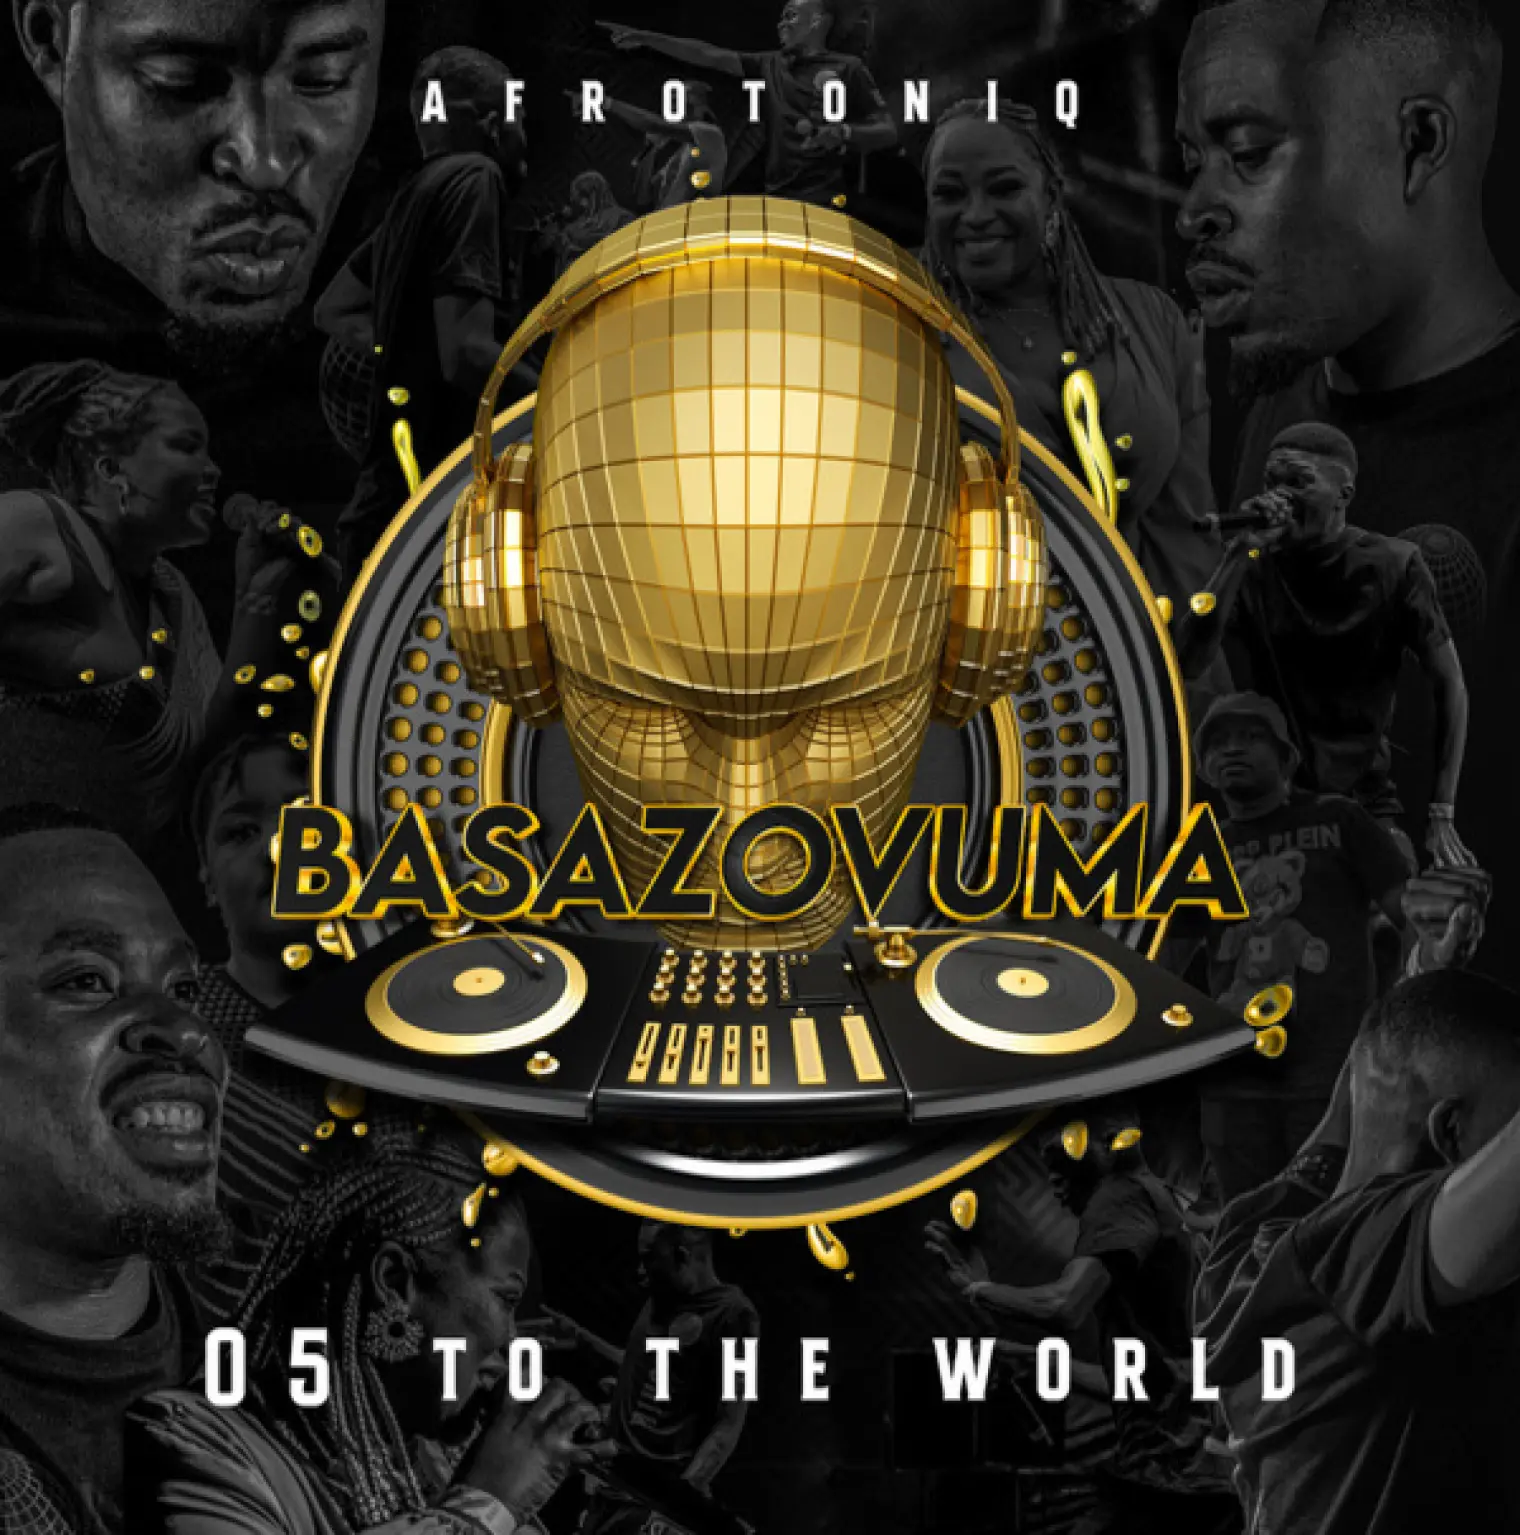 Basazovuma (05 to the world) -  AfroToniQ 